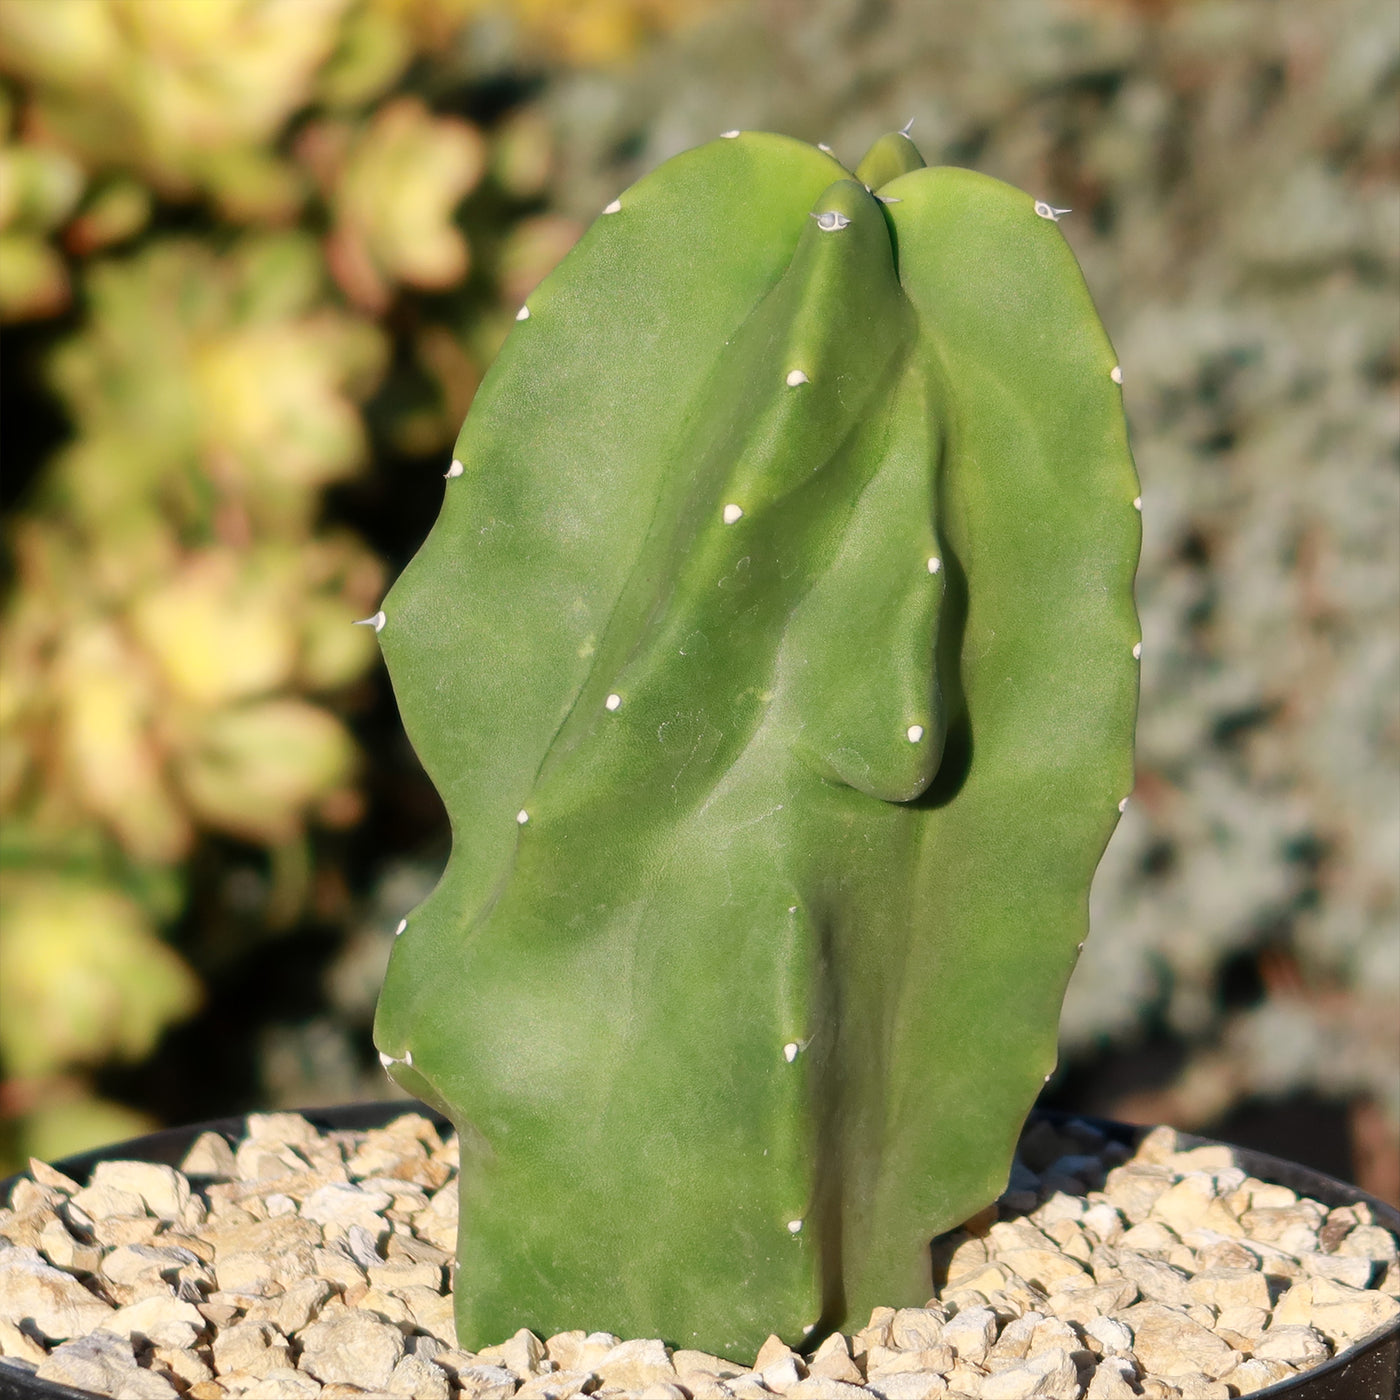 Totem Pole Cactus 'Lophocereus schottii 'monstrosus'